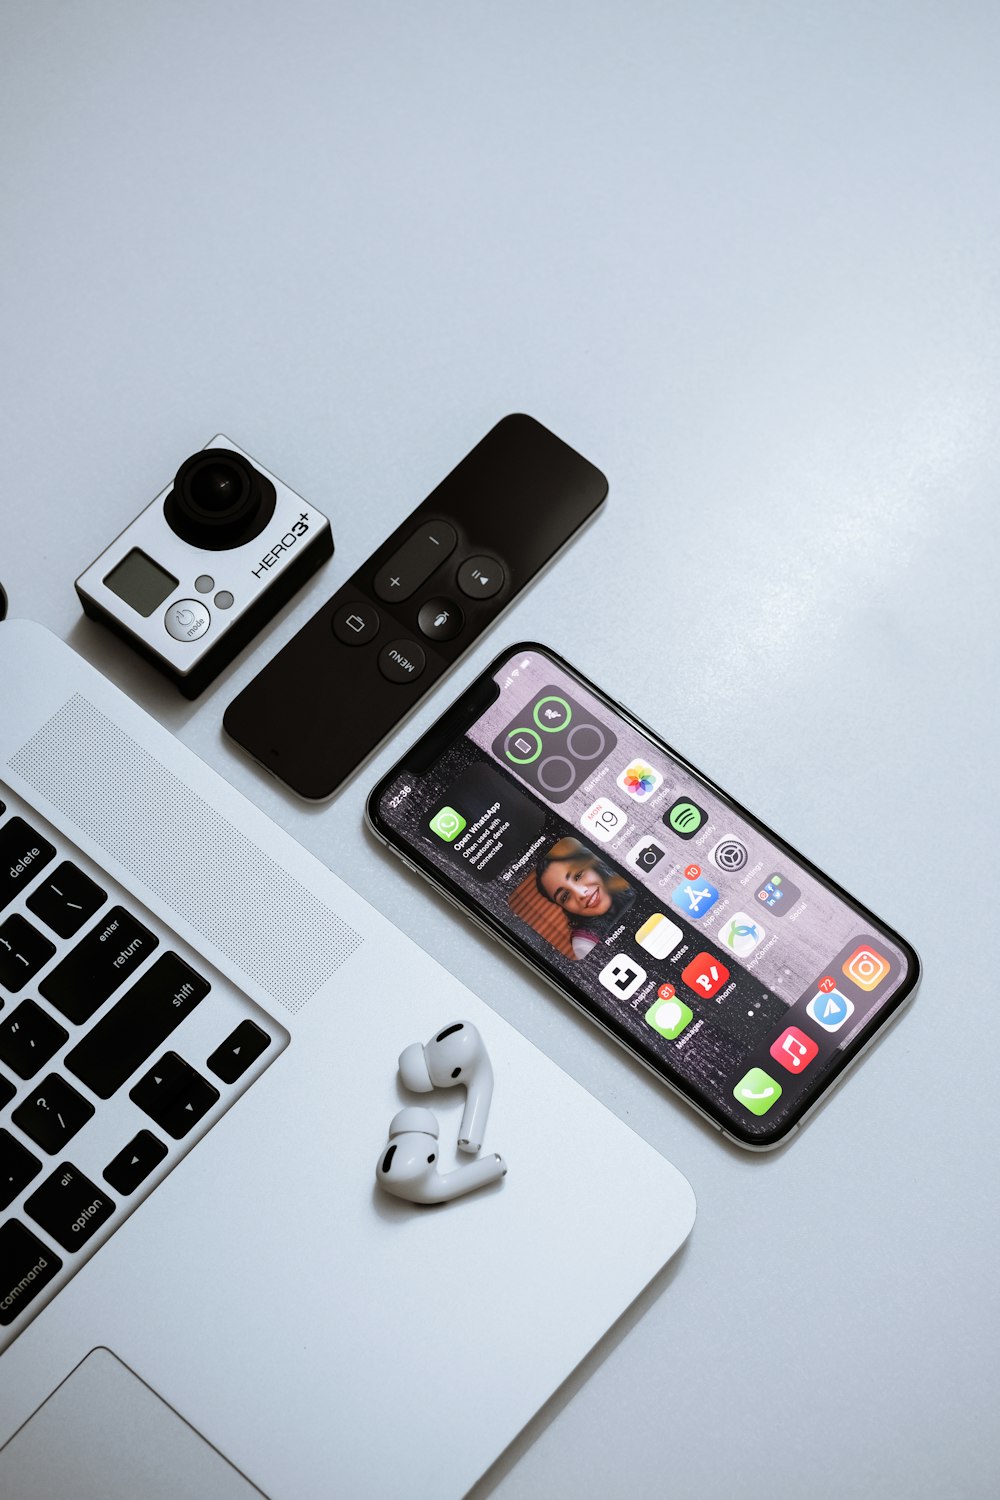 Schwarzes iPhone 4 neben weißer Apple Wireless Keyboard und weißer kabelloser Maus